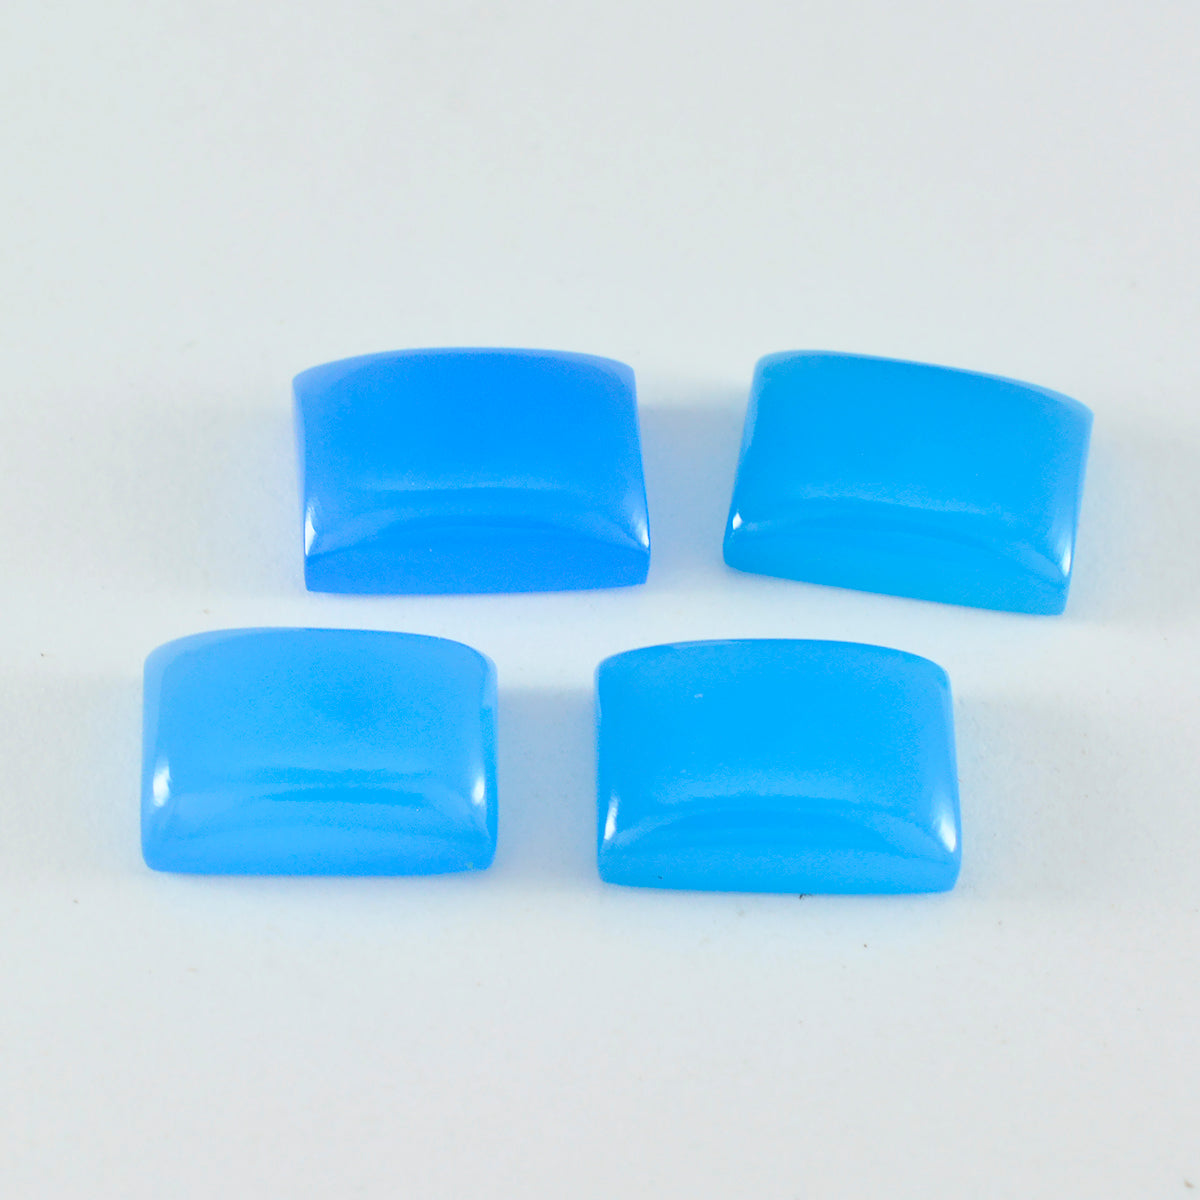 Riyogems 1 pc cabochon de calcédoine bleue 10x12mm forme octogonale belles pierres précieuses de qualité